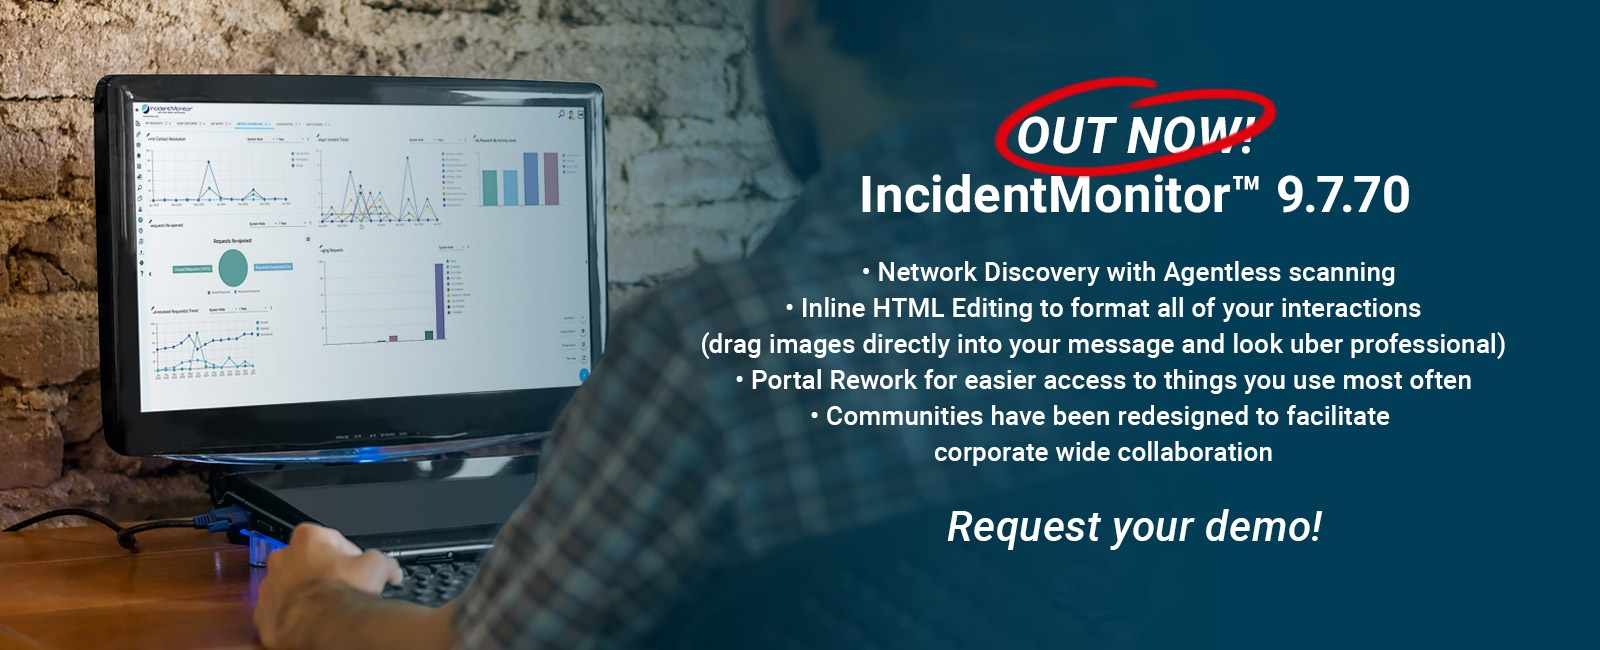 IncidentMonitor Service Desk Software V9.7.70 Released